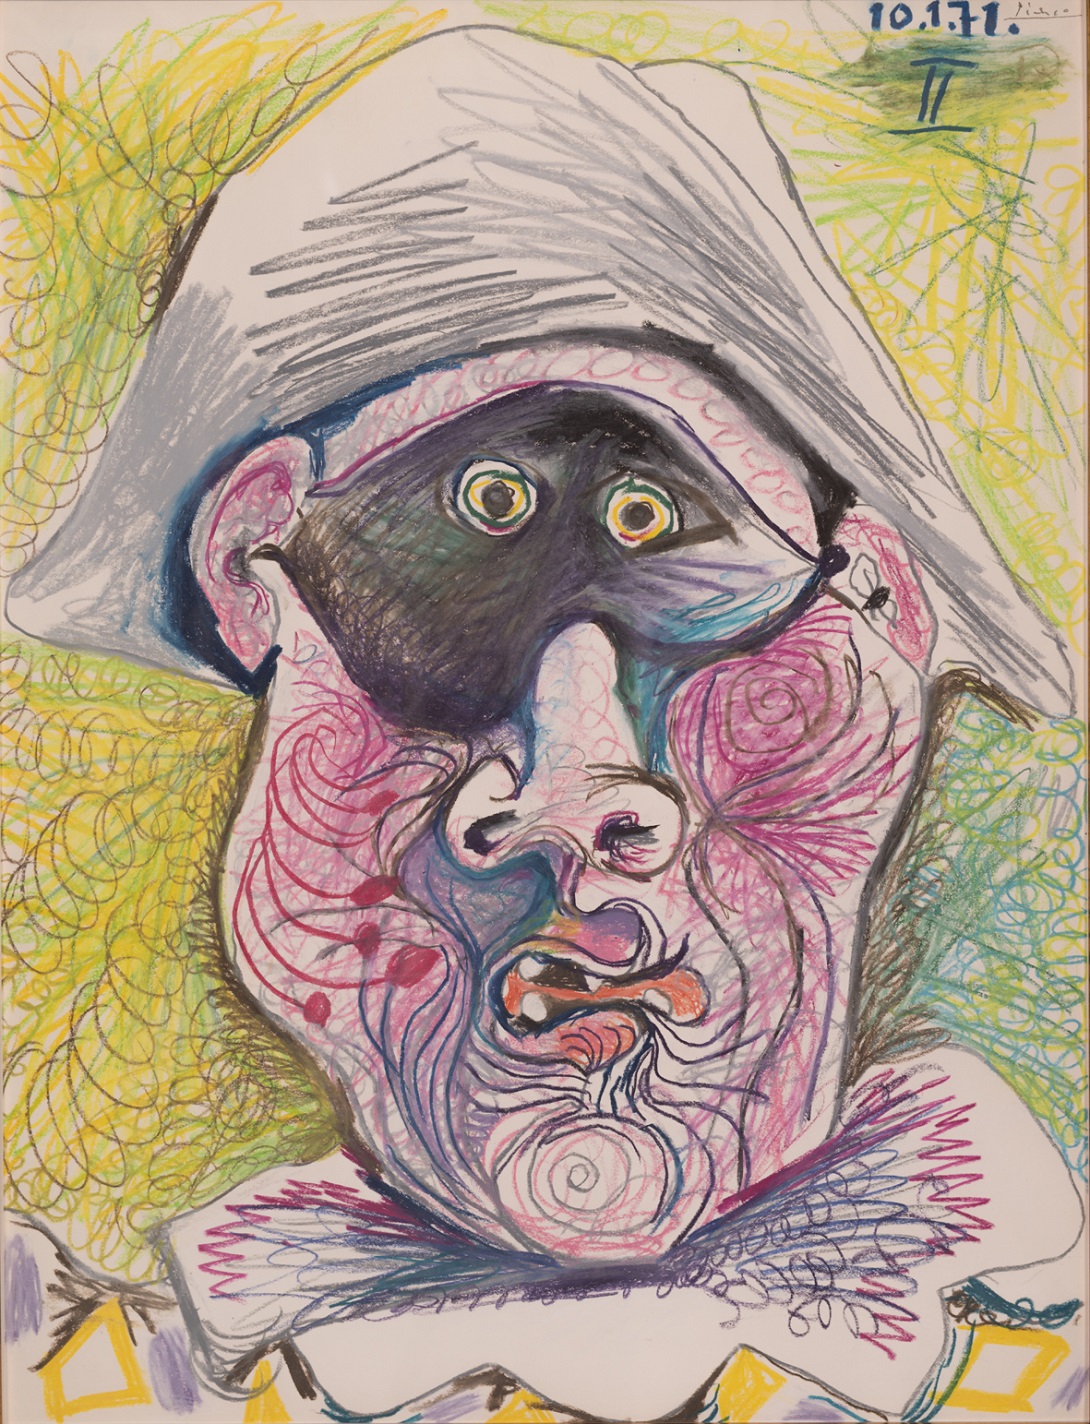 Pablo Picasso, Testa di Arlecchino II, 1971, matita e pastello su carta, 65,2 x 50,2 cm